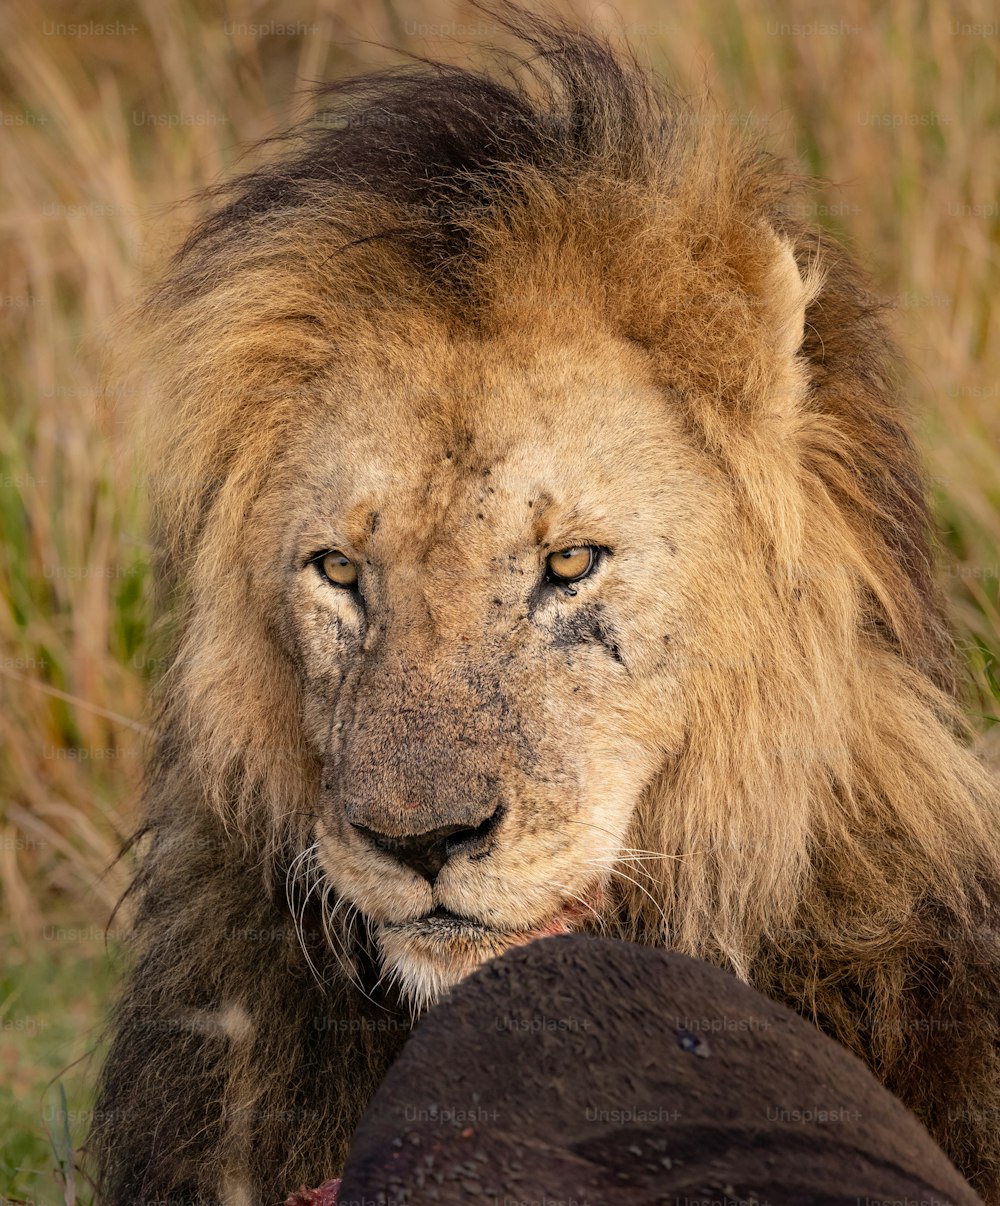 Um retrato do leão no Maasai Mara, África